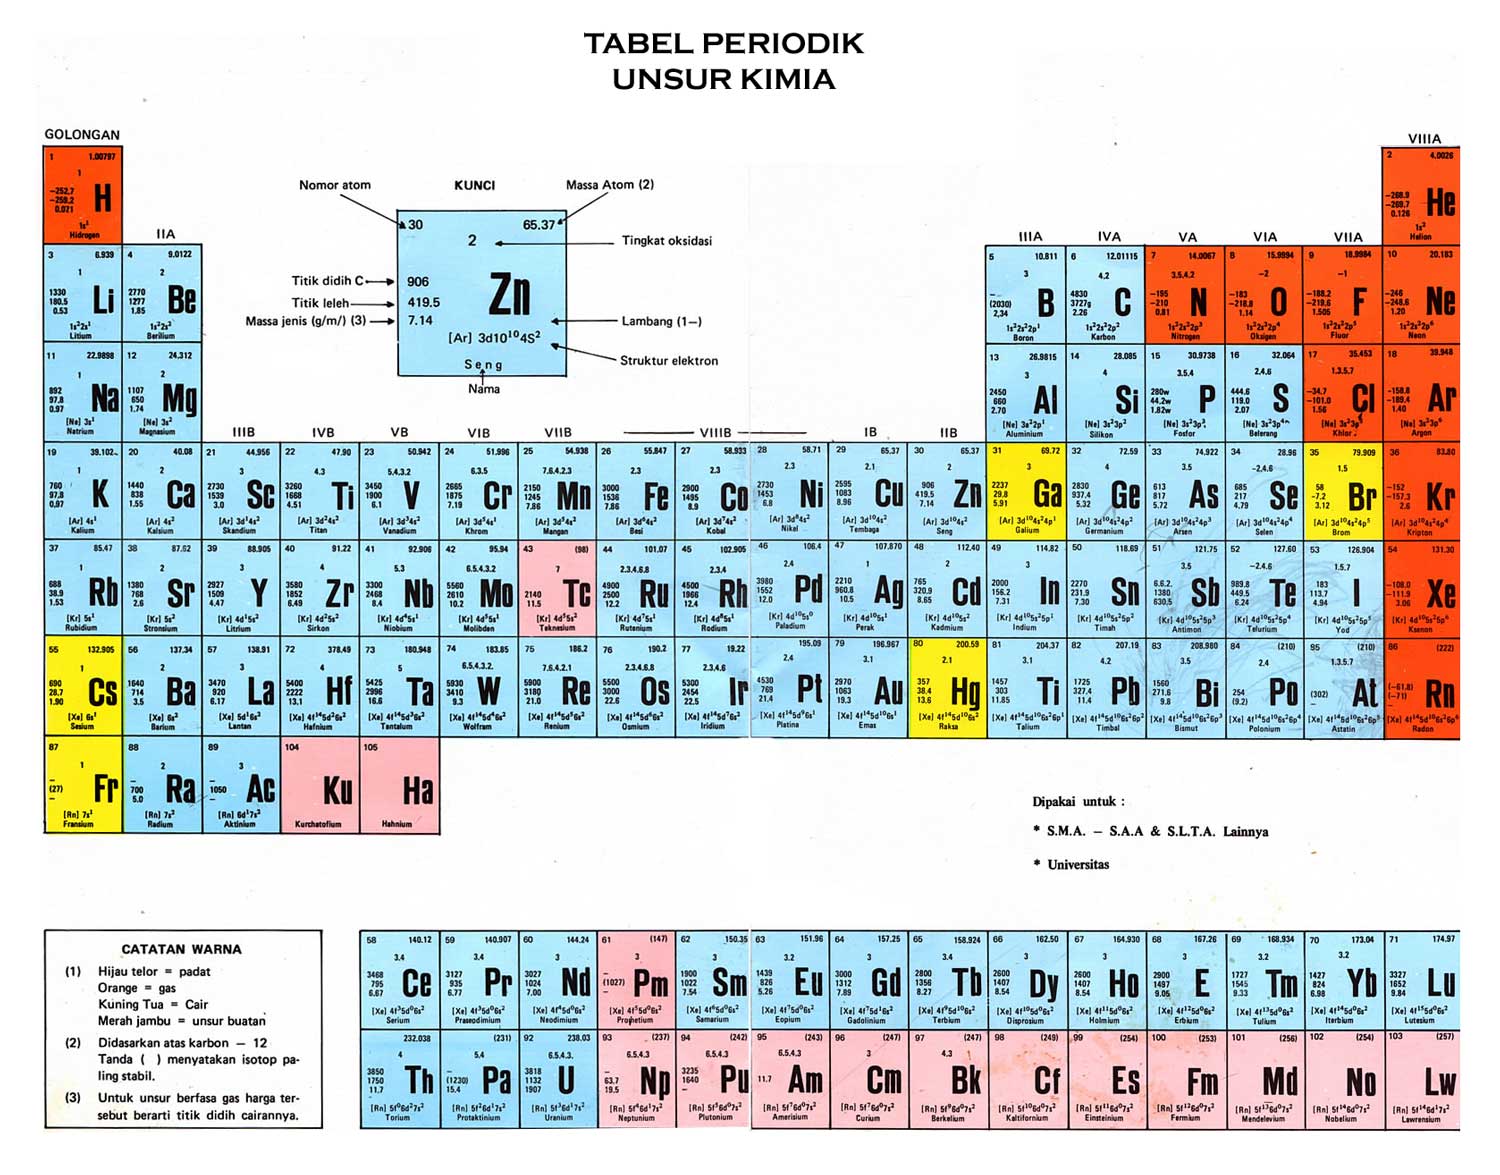 Cara Cepat Menghafal Tabel Periodik Unsur Kimia Dengan Mudah Menggunakan Cerita Pendidikan Sains Teknologi